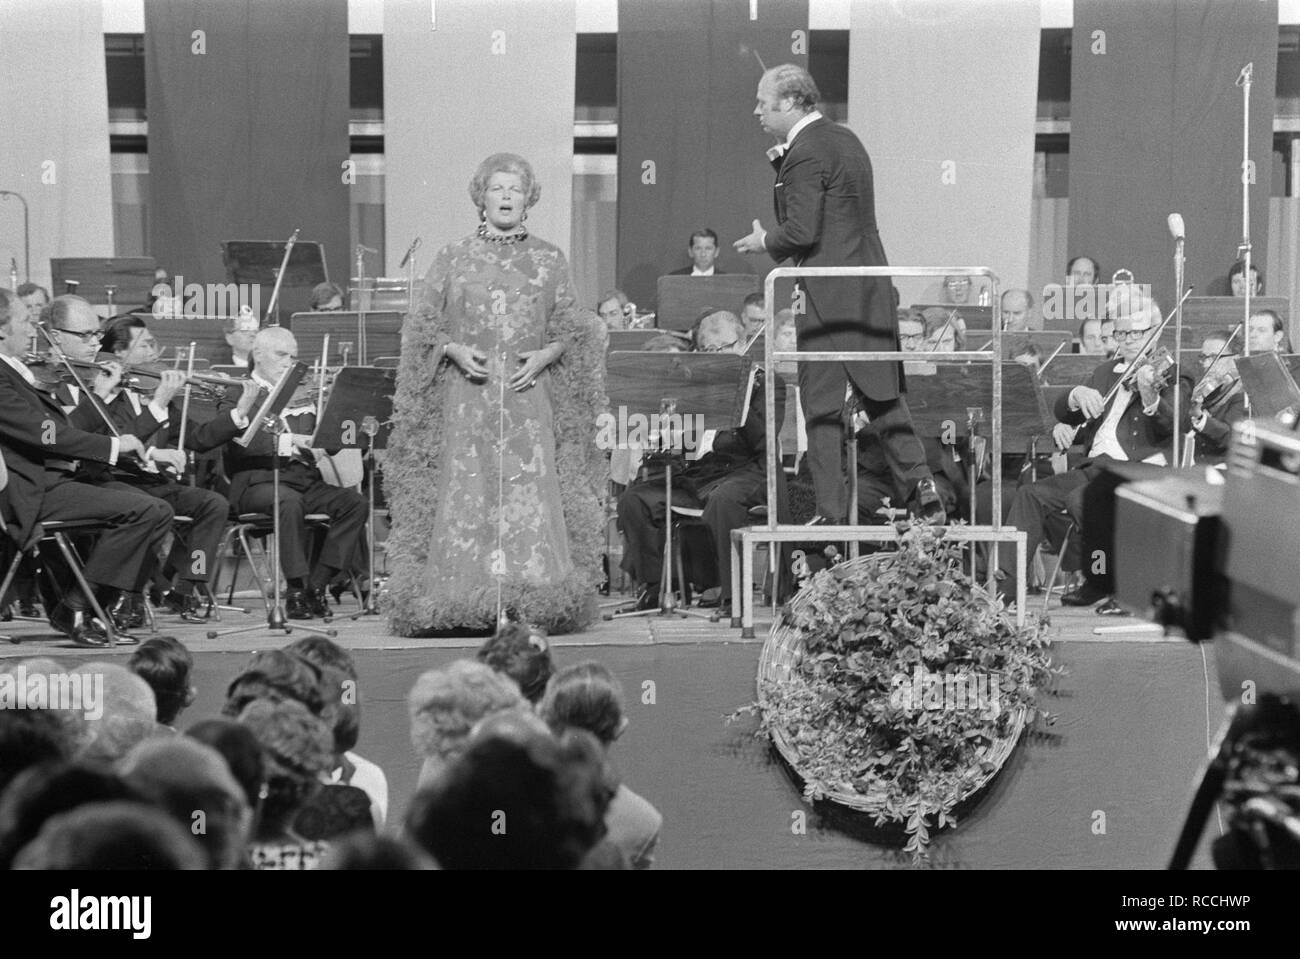 Afscheidsconcert van Gre Brouwenstijn met Concertgebouworkest in RAI Amsterdam, Bestanddeelnr 924-6785. Stock Photo